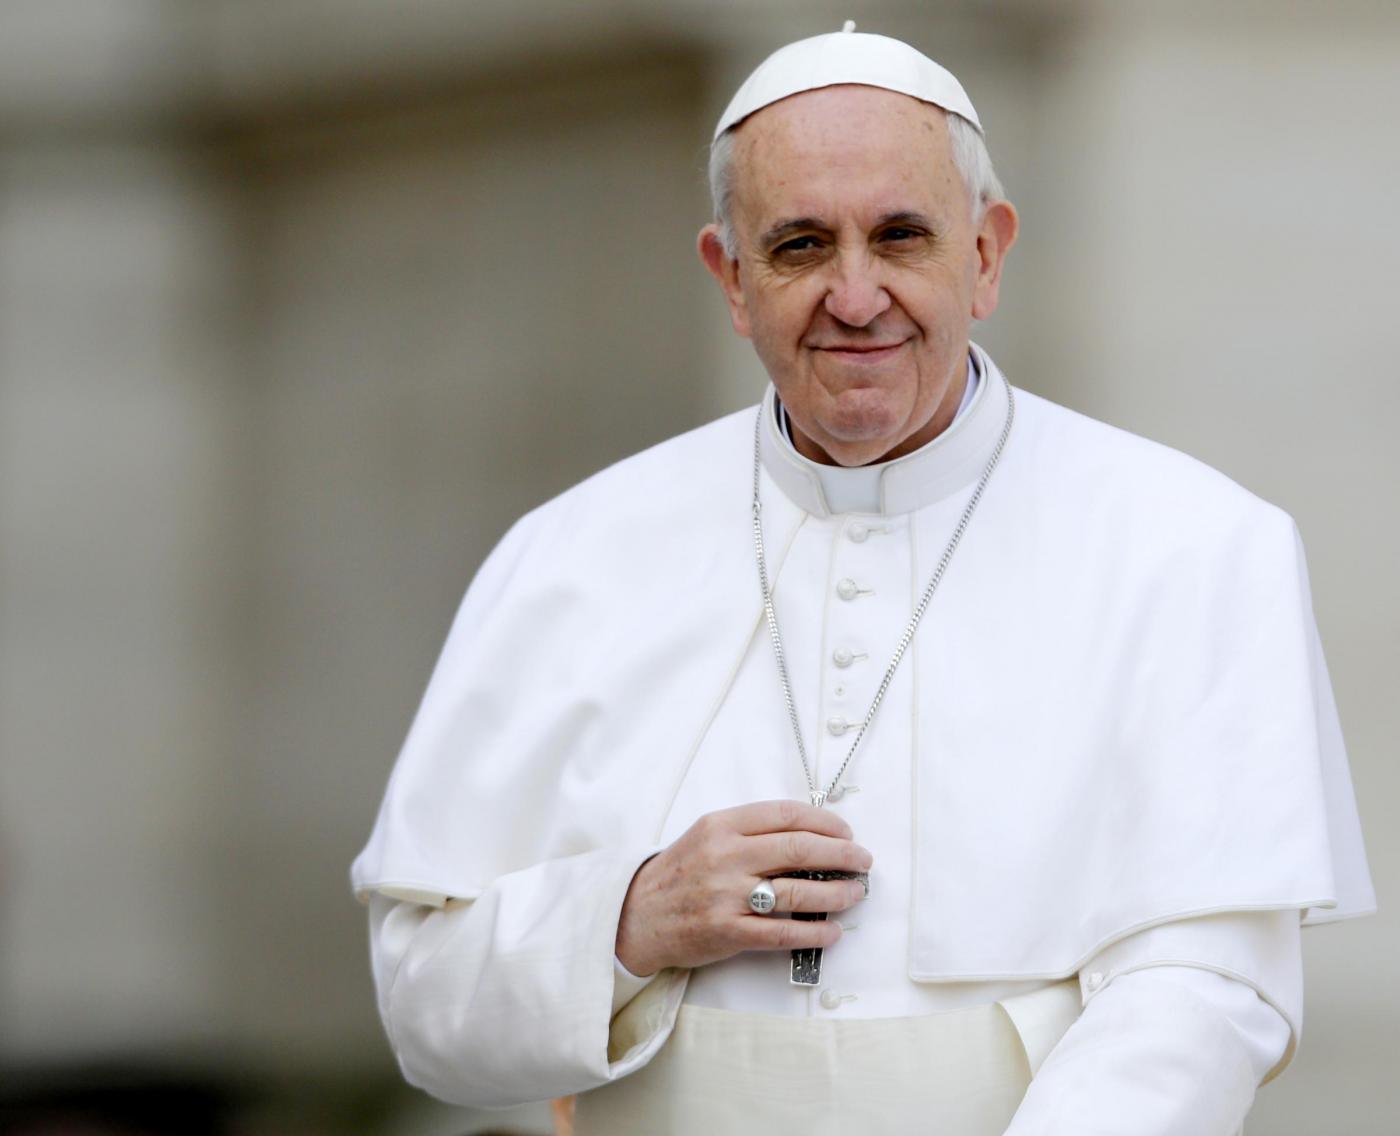 Vittorio Sgarbi contro Papa Francesco, la dichiarazione shock: "È ateo" [VIDEO]